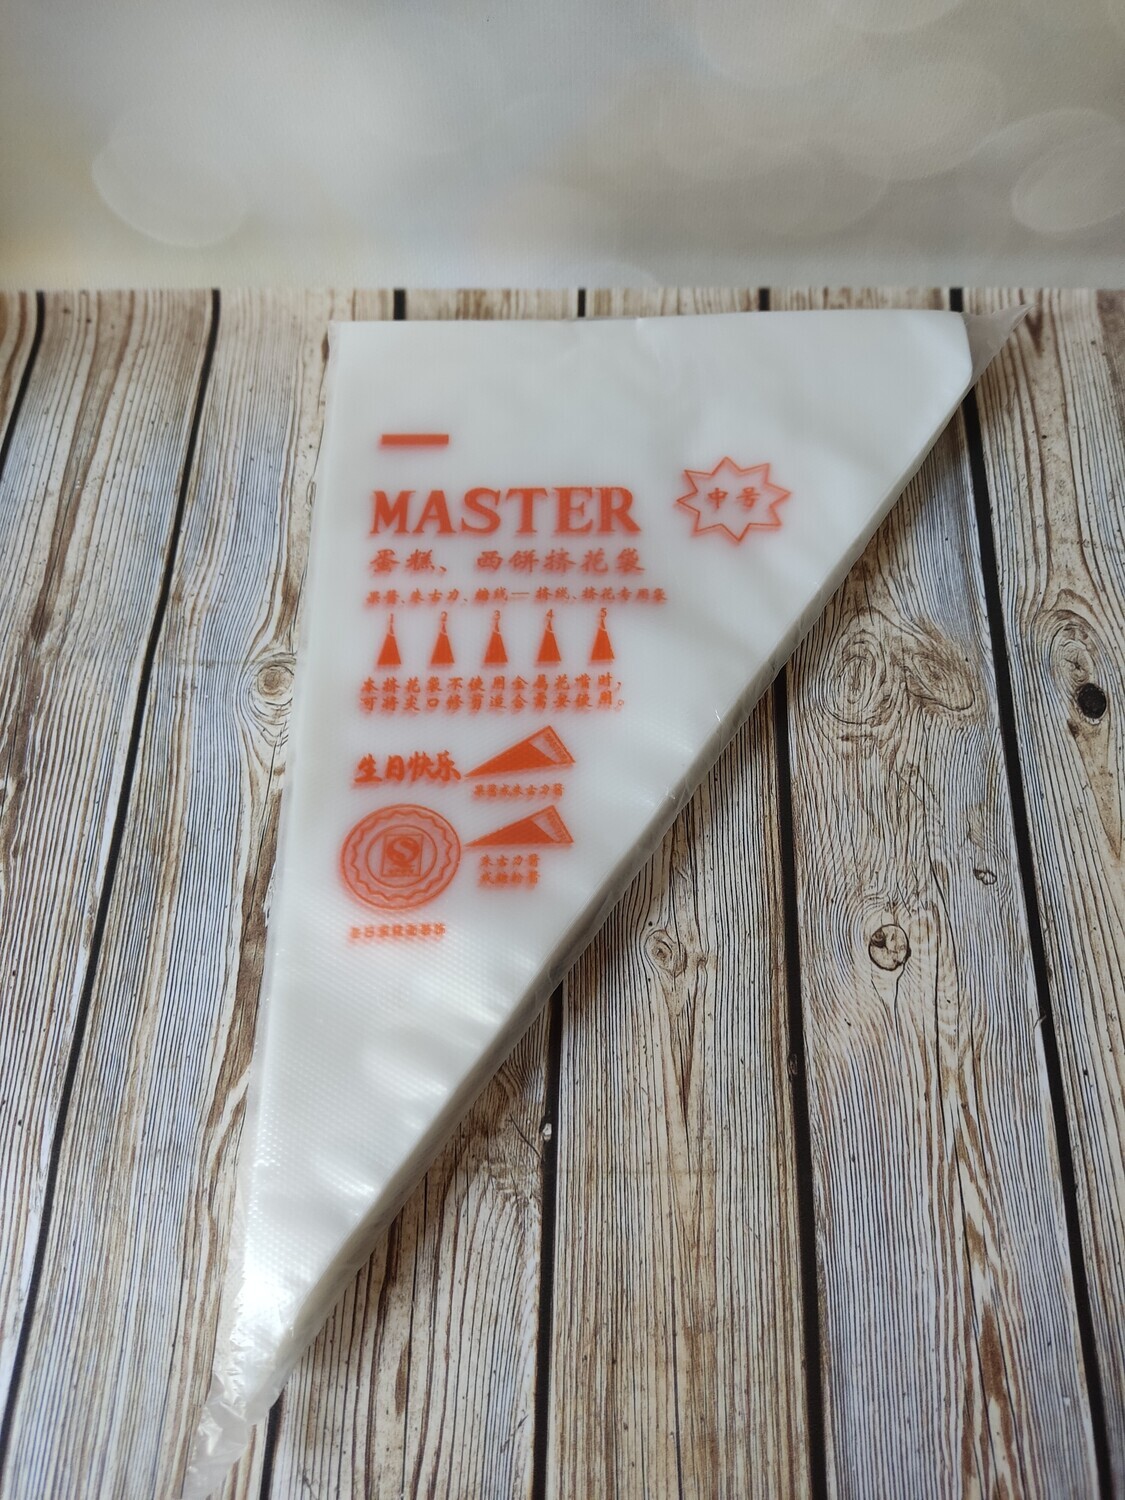 Мешки кондитерские "M" Master 100шт, 30см полиэтилен (Китай)